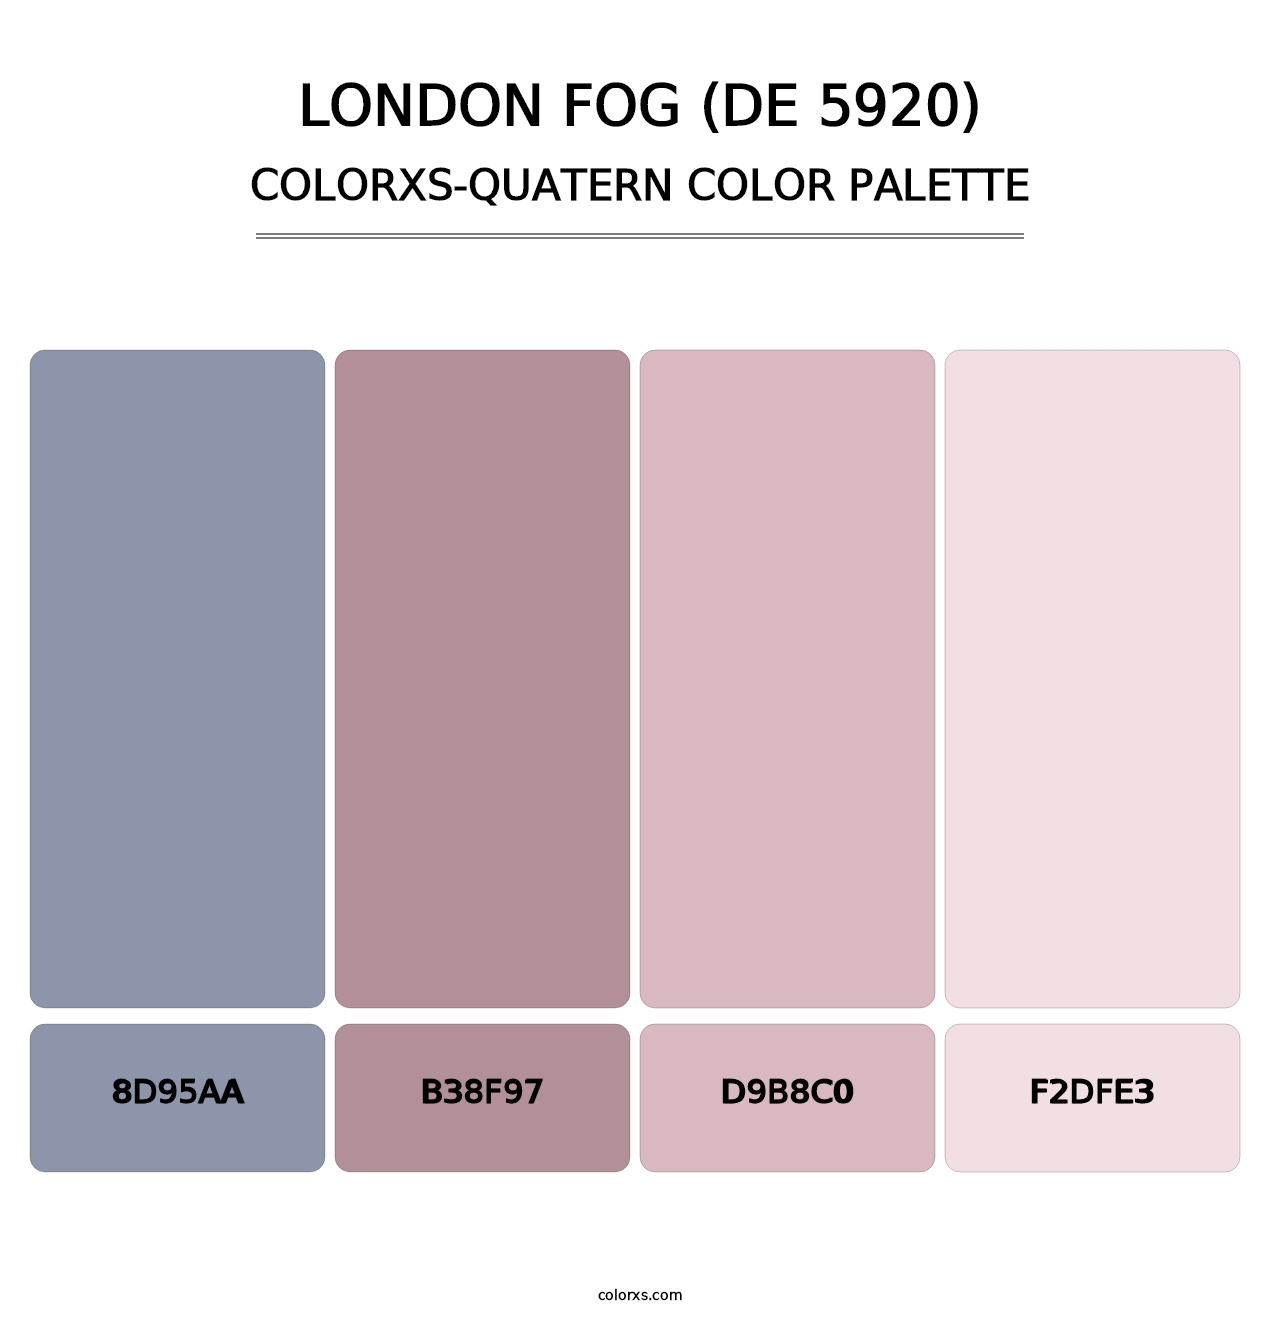 London Fog (DE 5920) - Colorxs Quatern Palette